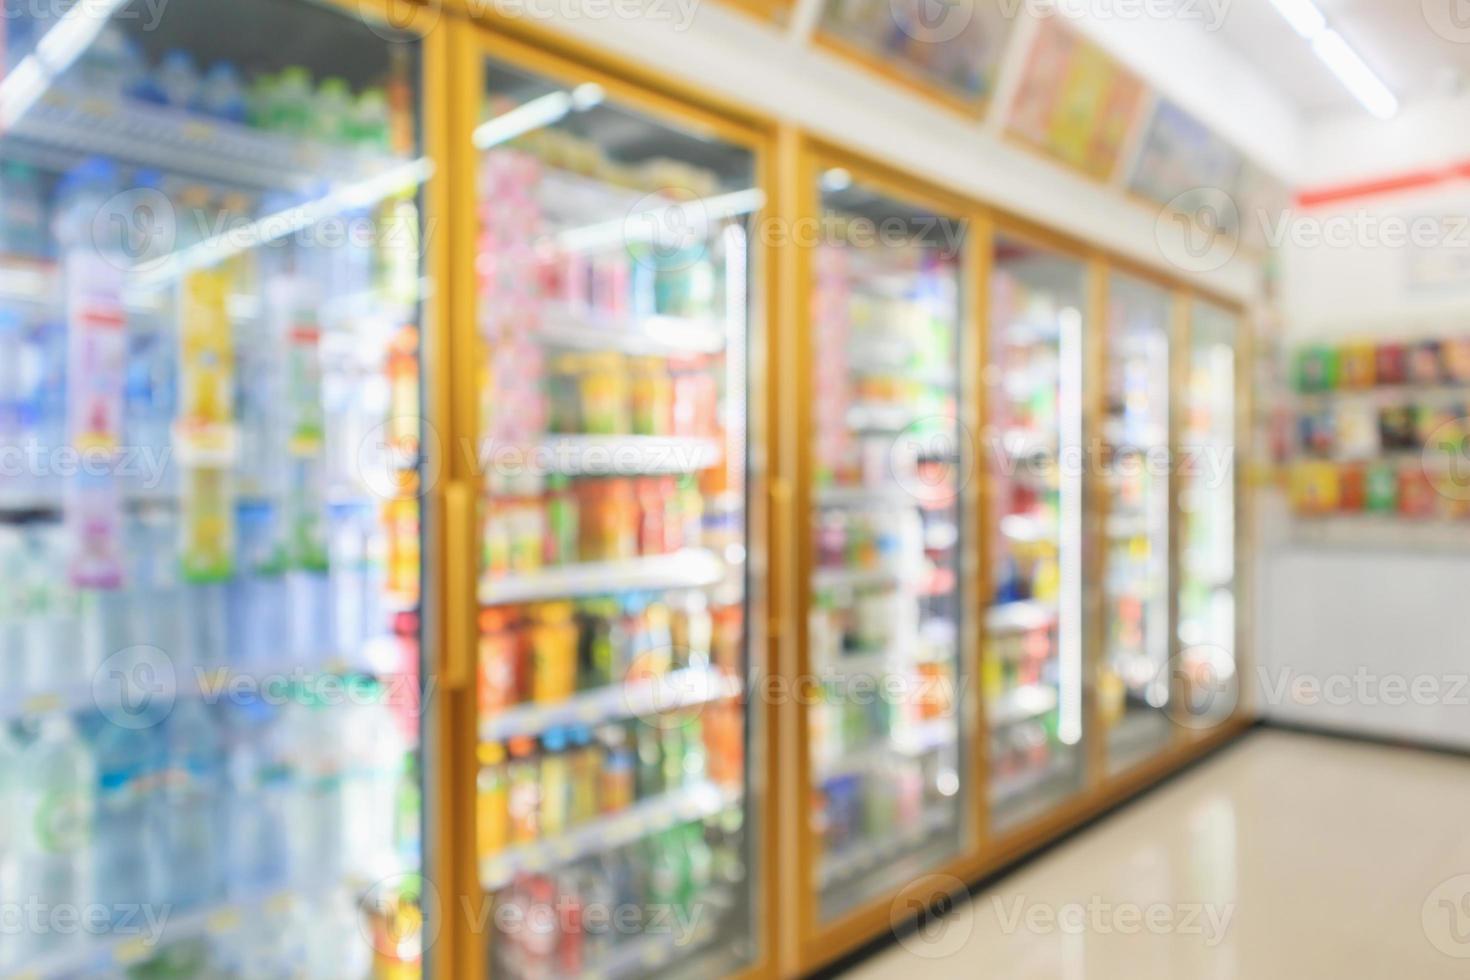 geladeiras de loja de conveniência de supermercado com garrafas de refrigerante nas prateleiras abstrato desfocar o fundo foto